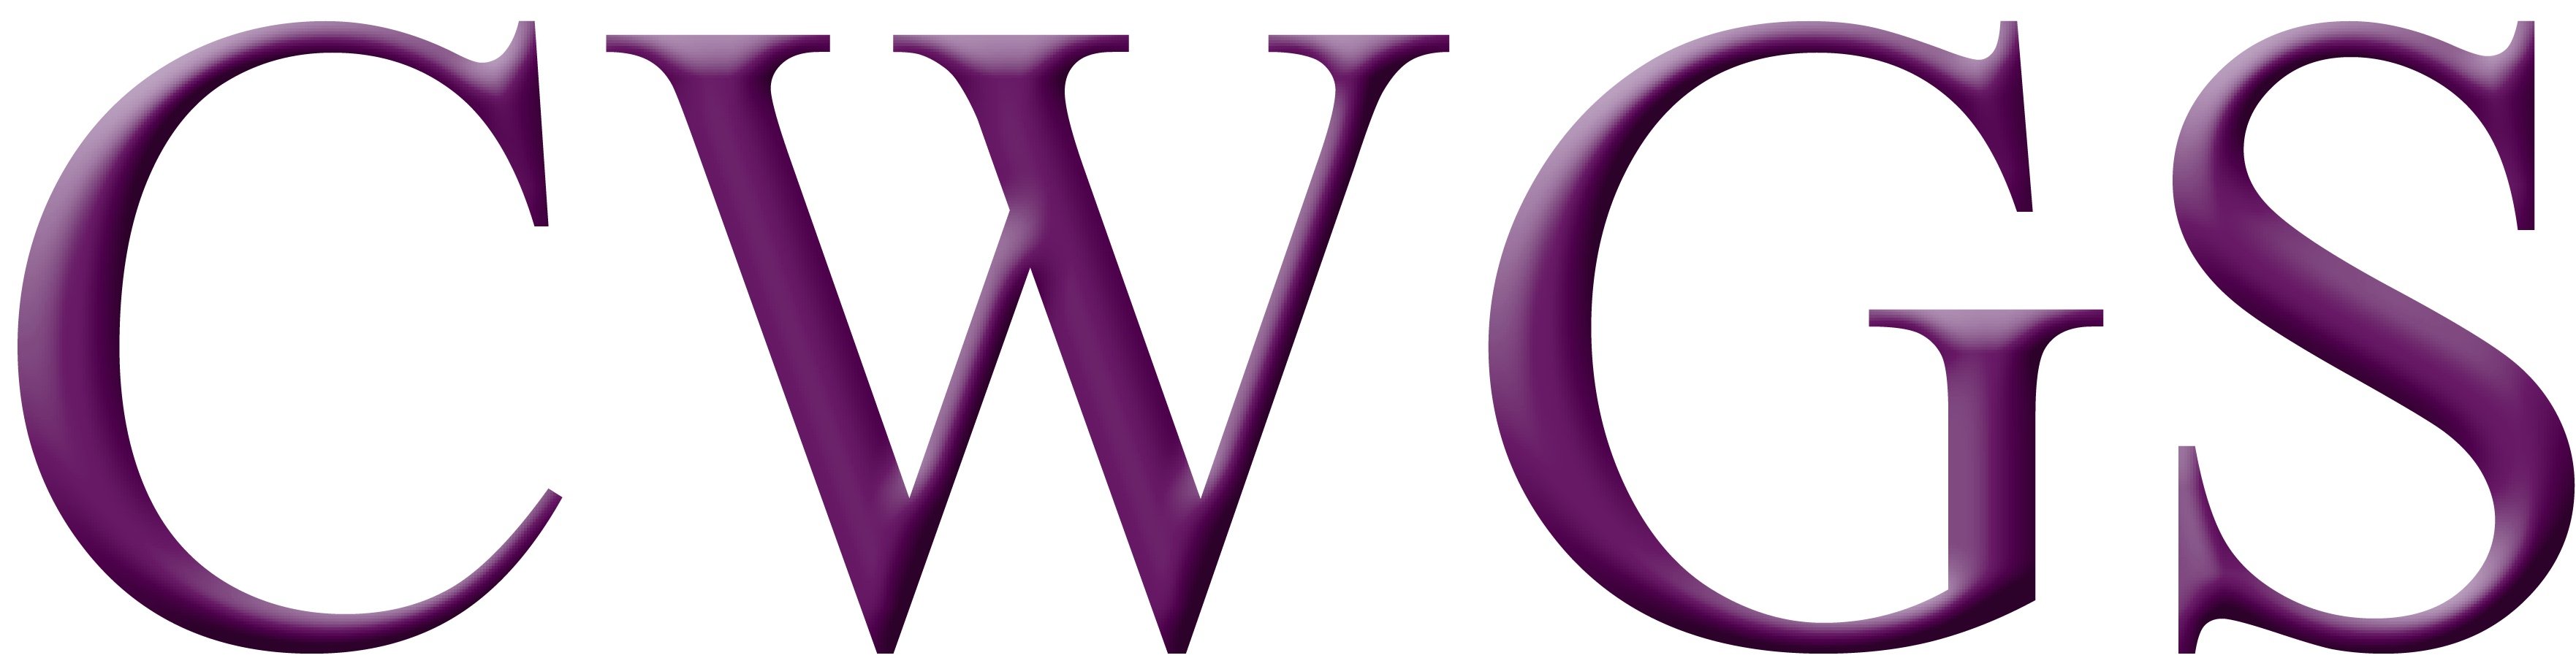 UPCWGS Logo CWGS